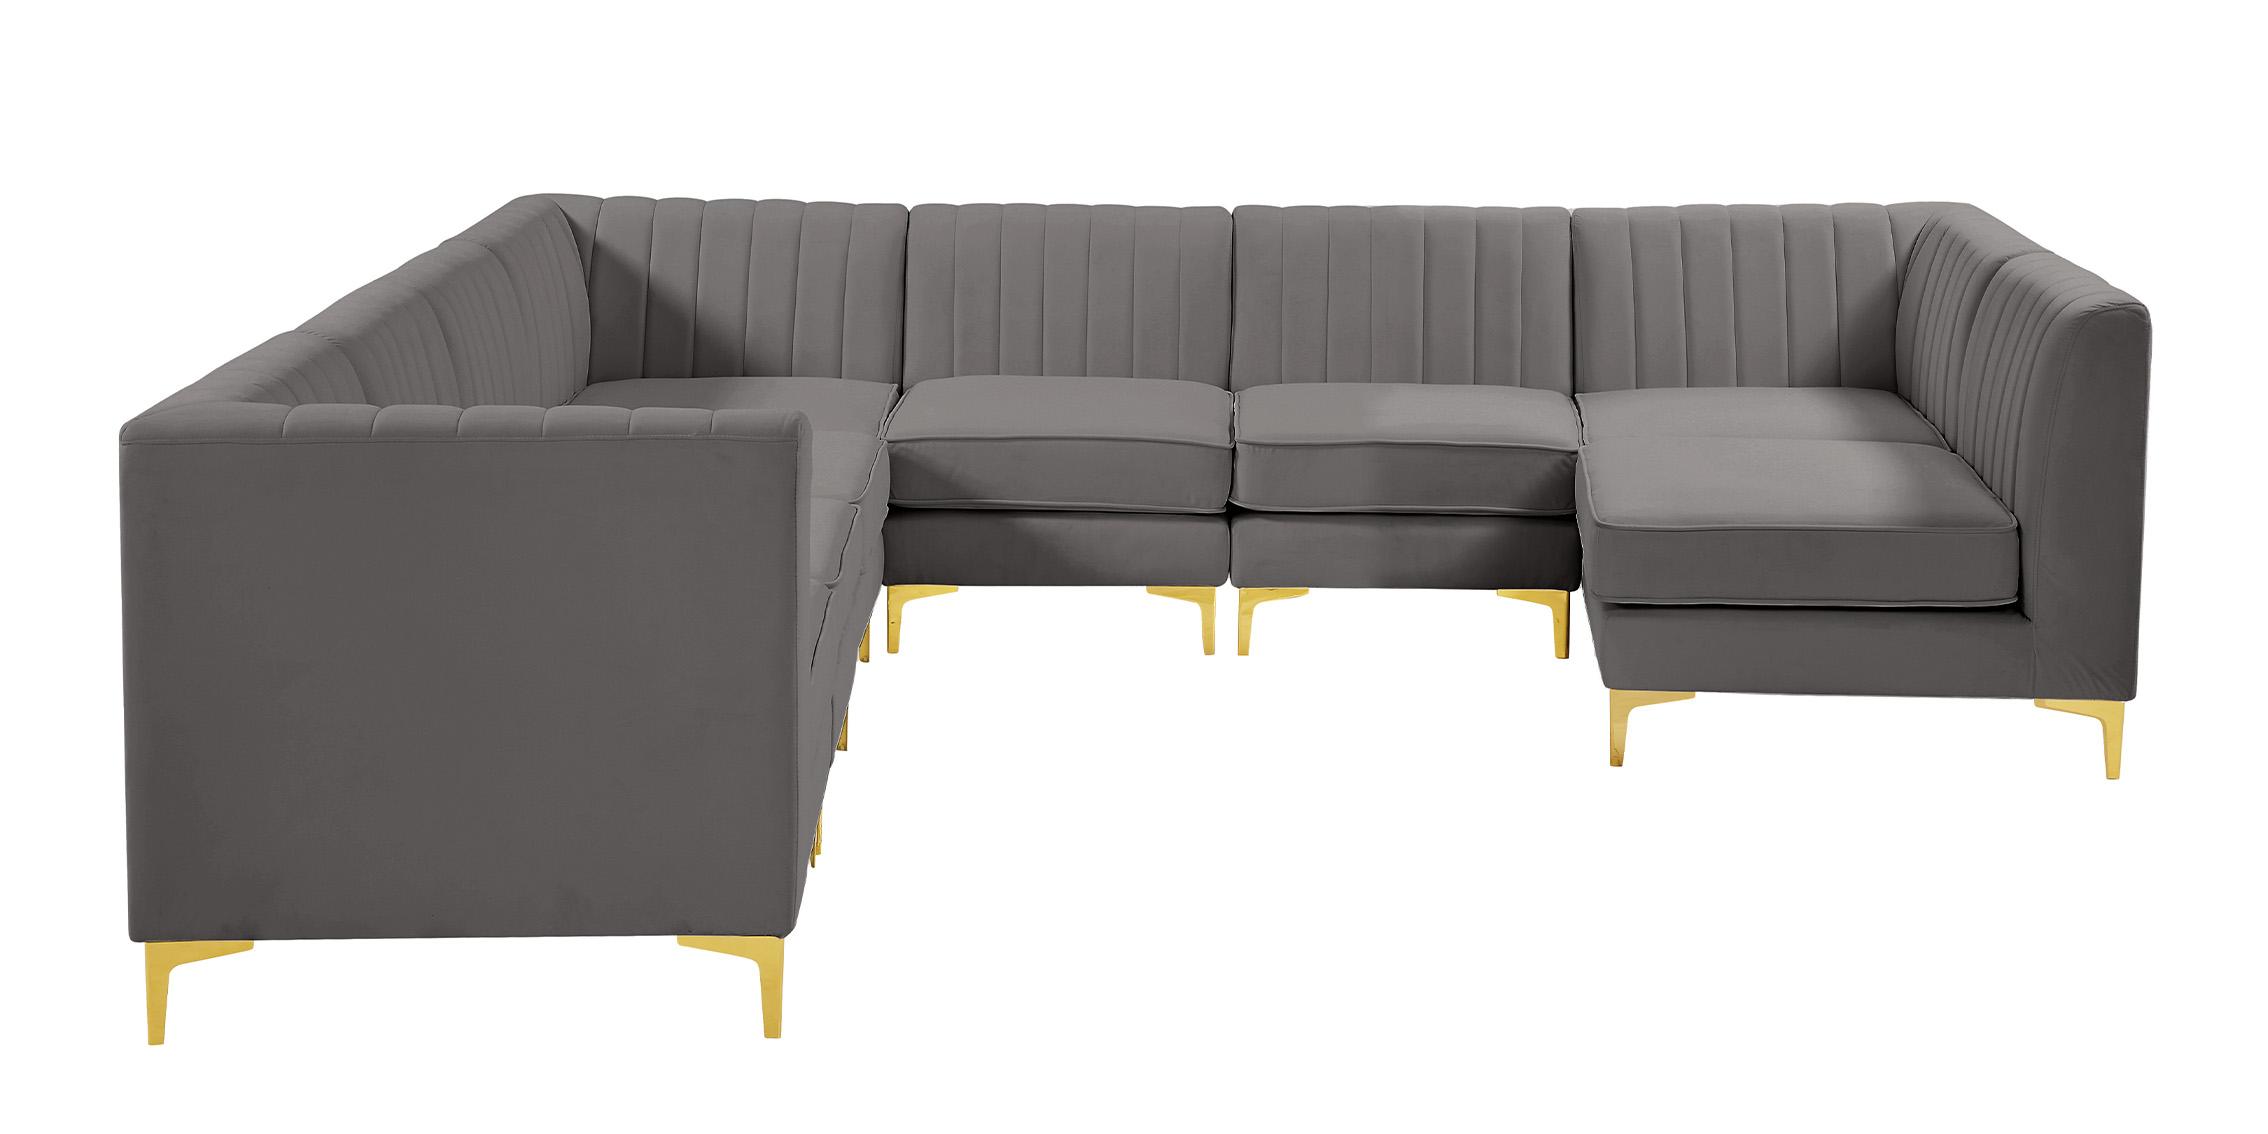 

    
Meridian Furniture ALINA 604Grey-Sec8A Modular Sectional Sofa Gray 604Grey-Sec8A
